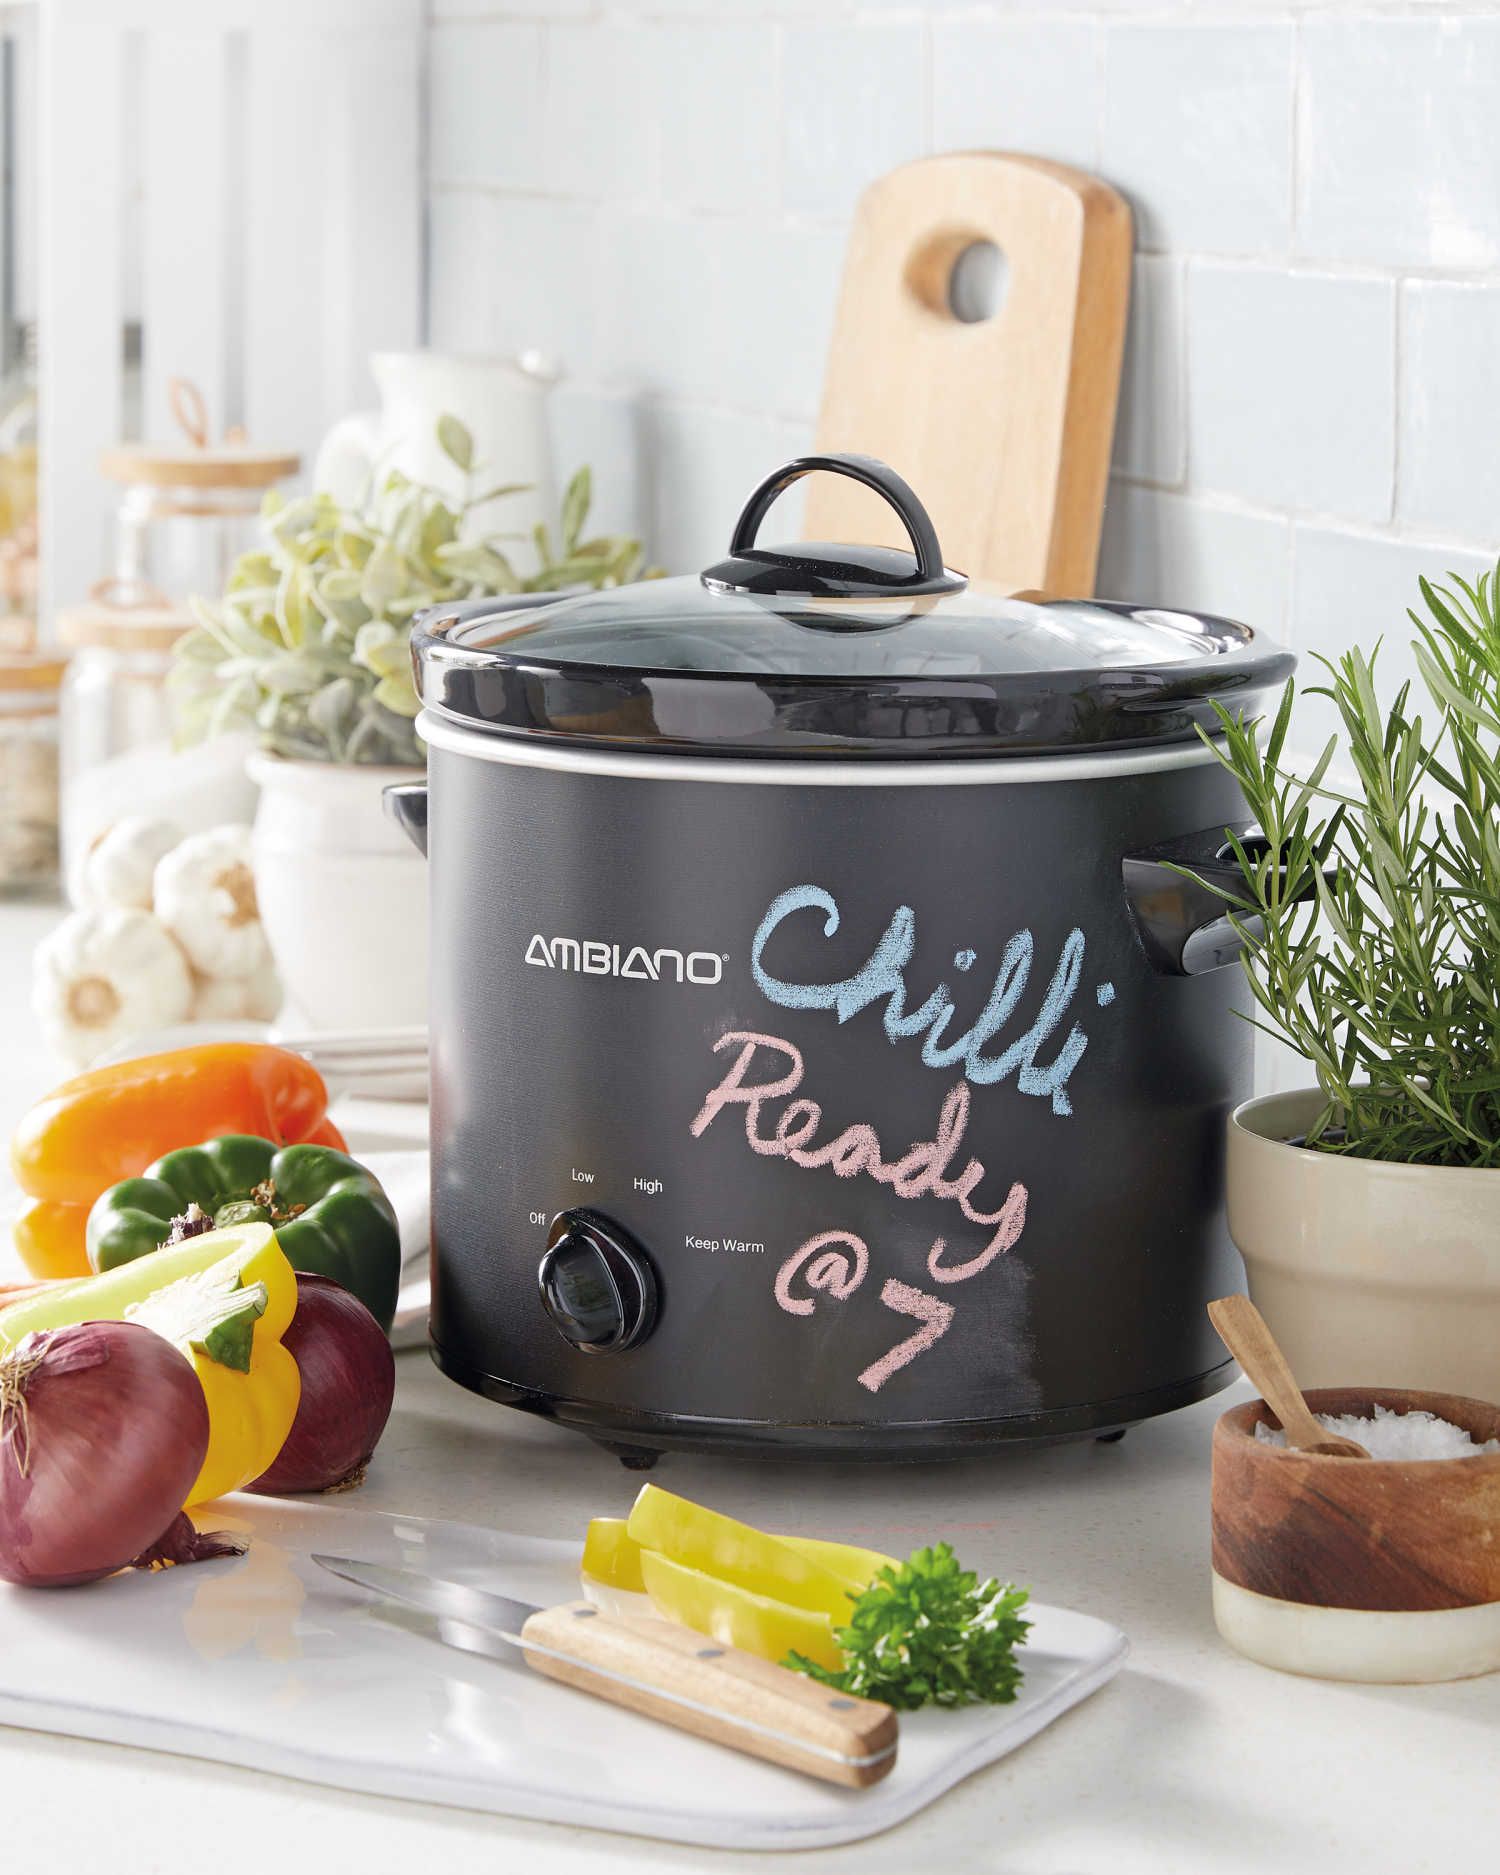 Buy Black digital pot 4.7L 1 unit Crock-Pot